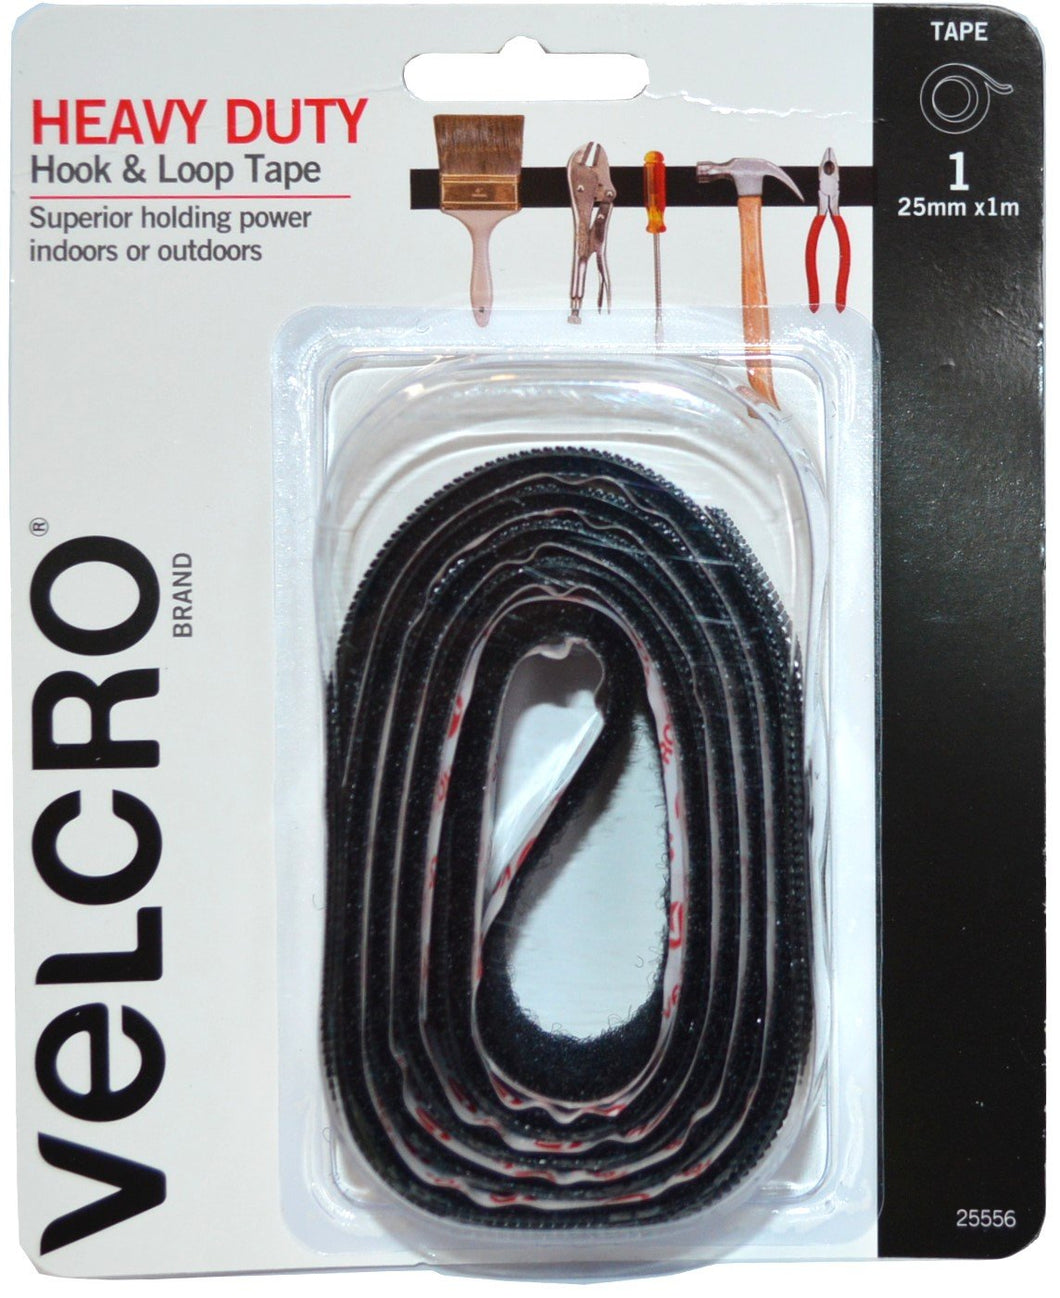 Heavy Duty Hook & Loop Tape 25mm x 1m Black Velcro